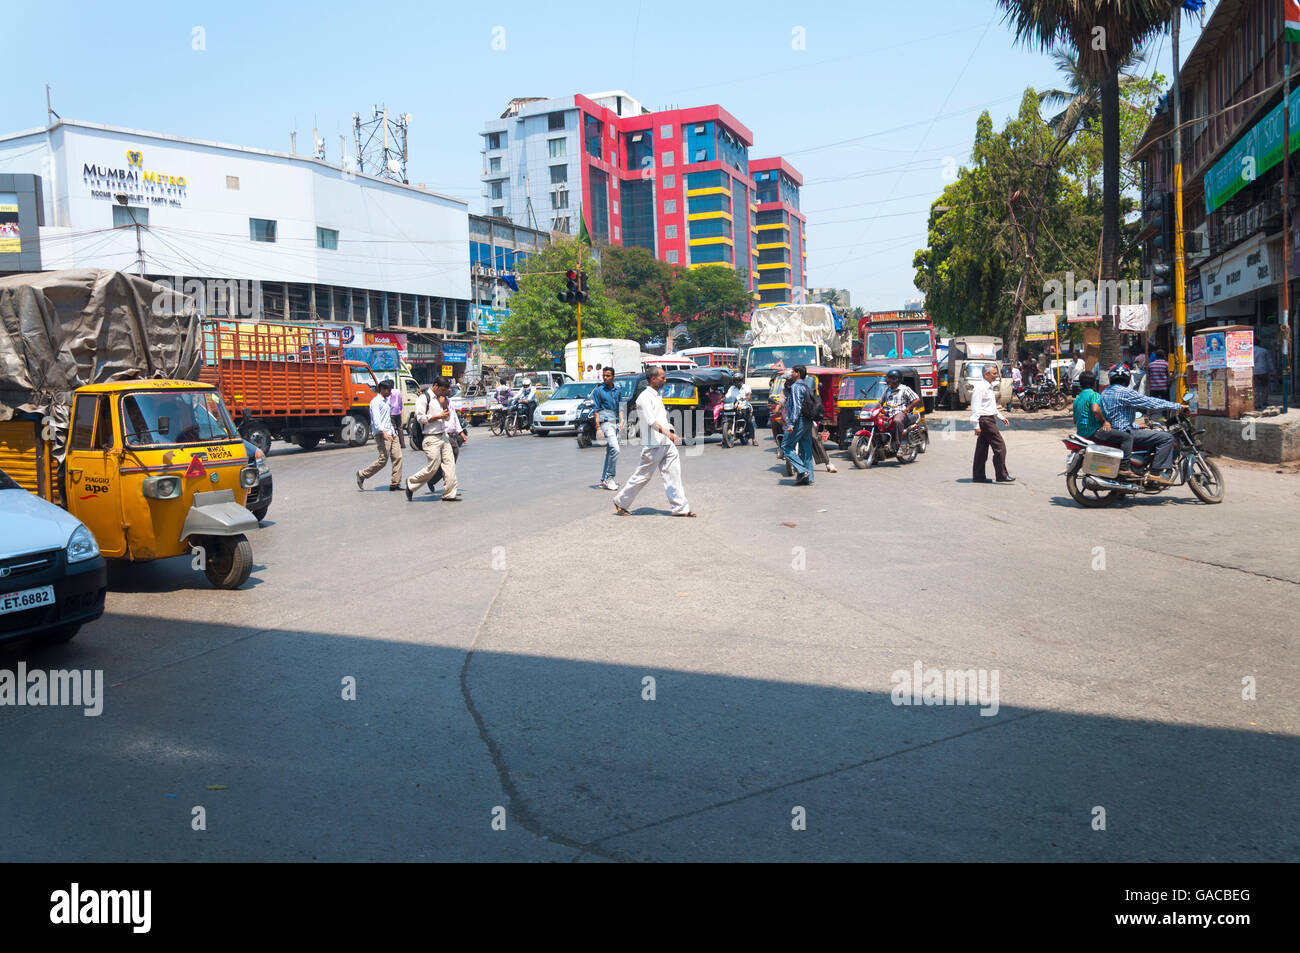 Street scene in Mumbai Maharashtra India crossing road by Mumbai Metro Hotel. Stock Photo